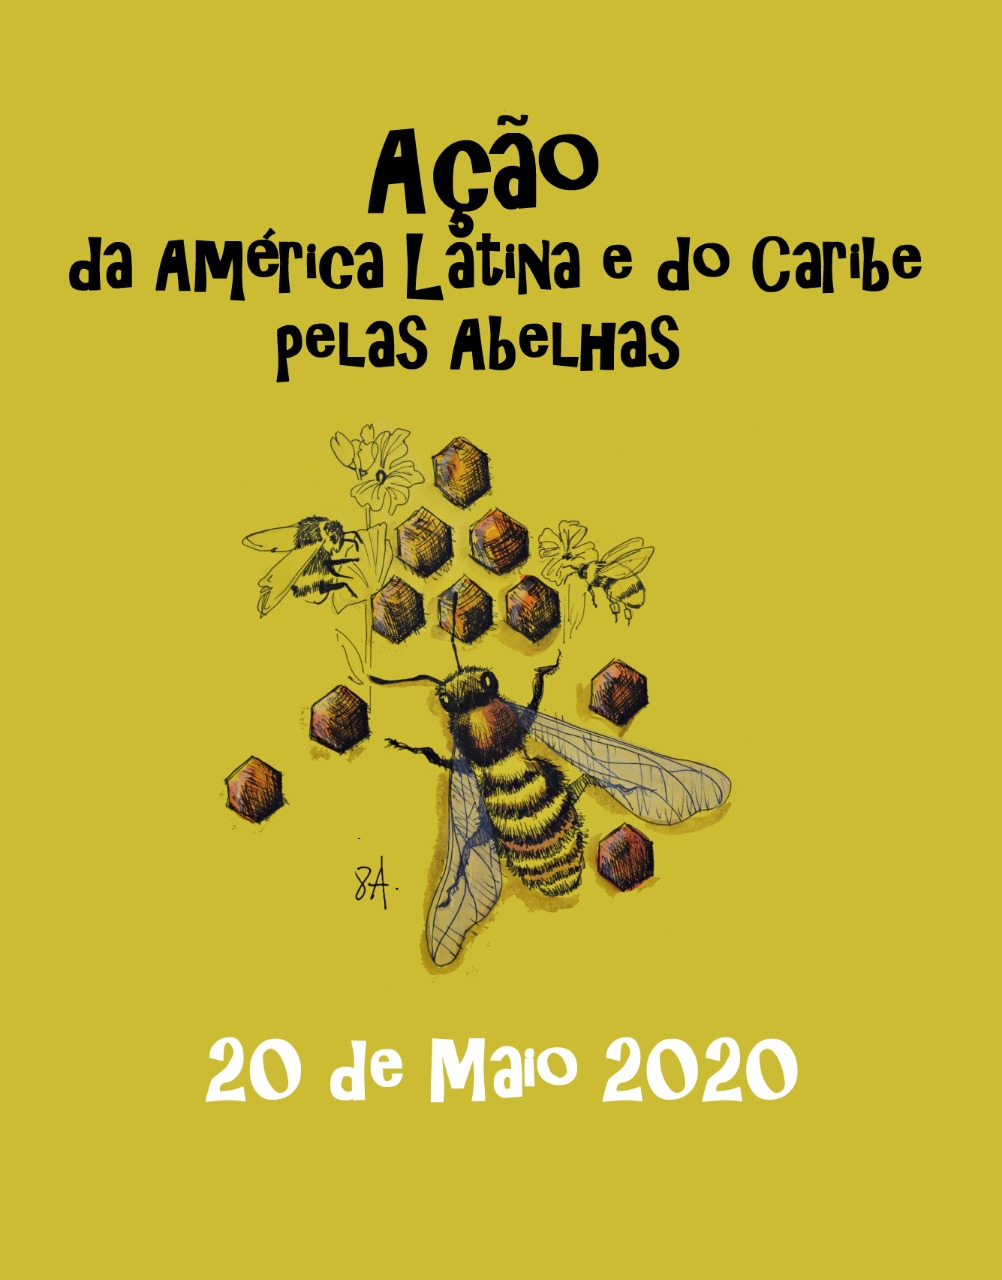 Ir para  <p><big>Expediente: A&ccedil;&atilde;o da Am&eacute;rica Latina e Caribe pelas abelhas.</big></p>

<p><big>Data: 20 de maio de 2020 - Quarta- feira, 20:00hs (Hor&aacute;rio de...